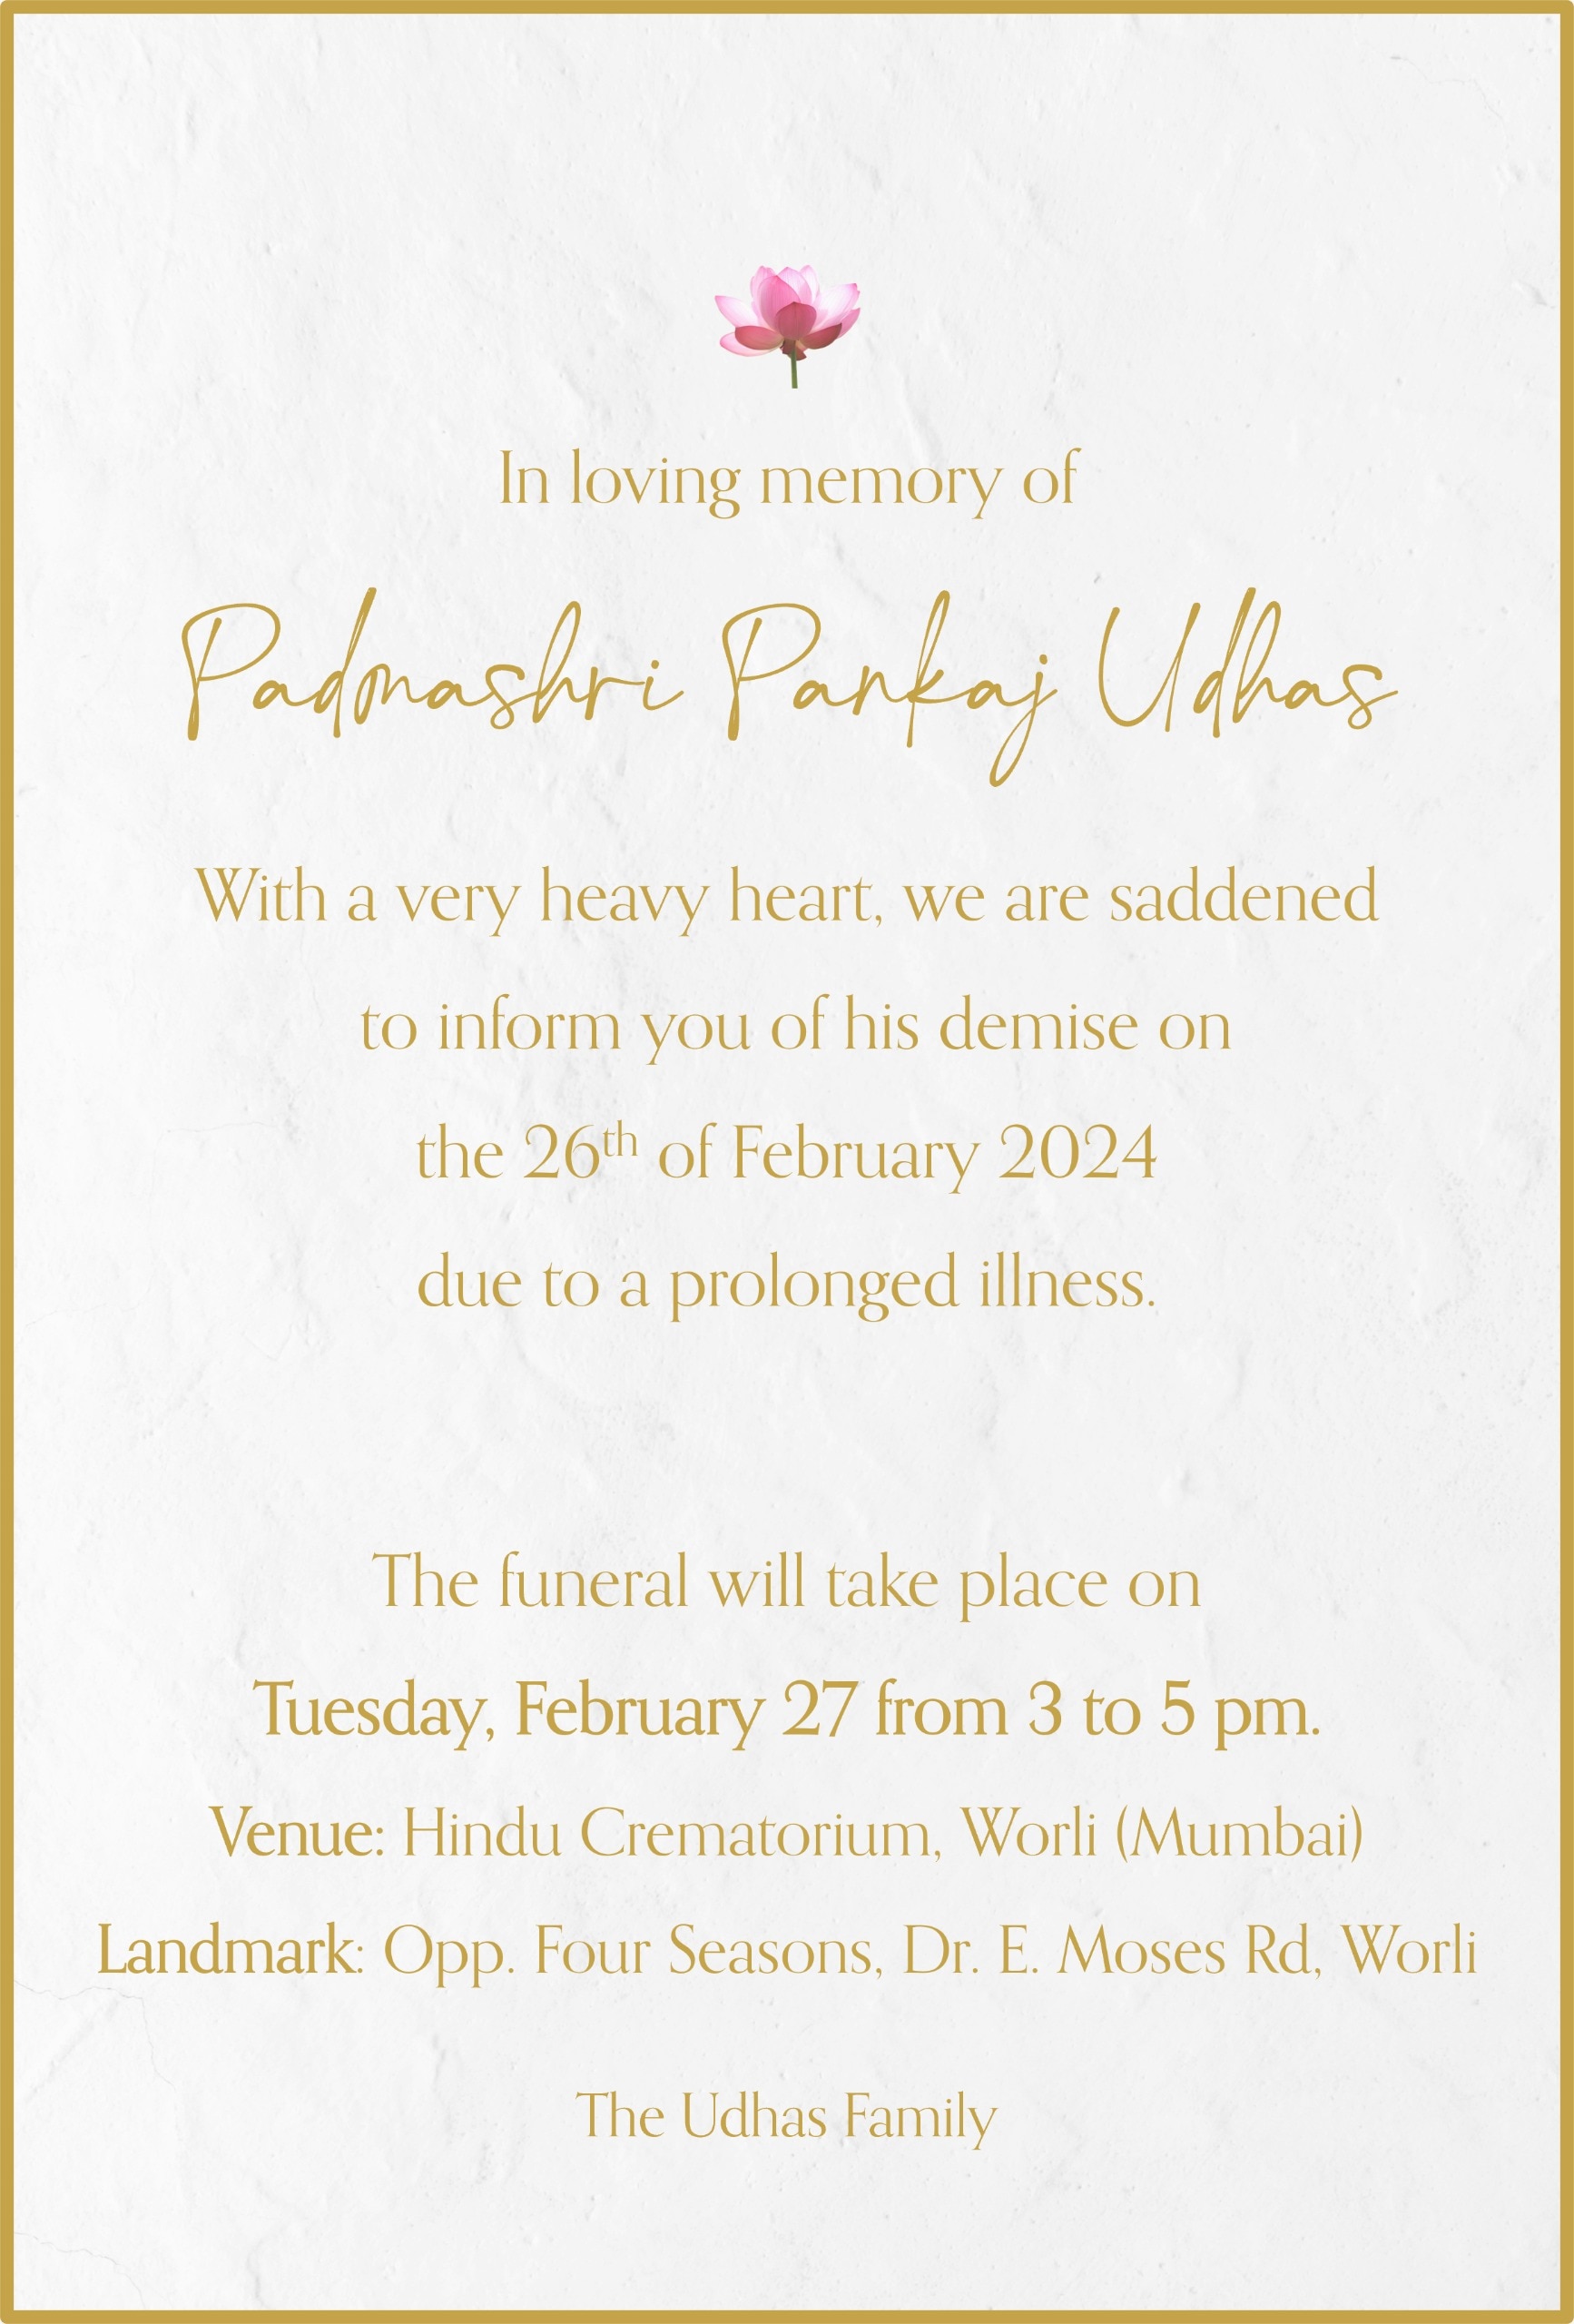 Pankaj Udhas Funeral: पद्मश्री पंकज उधास का निधन, कल पंचतत्वों में विलीन होंगे गजल गायक, जानें कब और कहां होगा अंतिम संस्कार